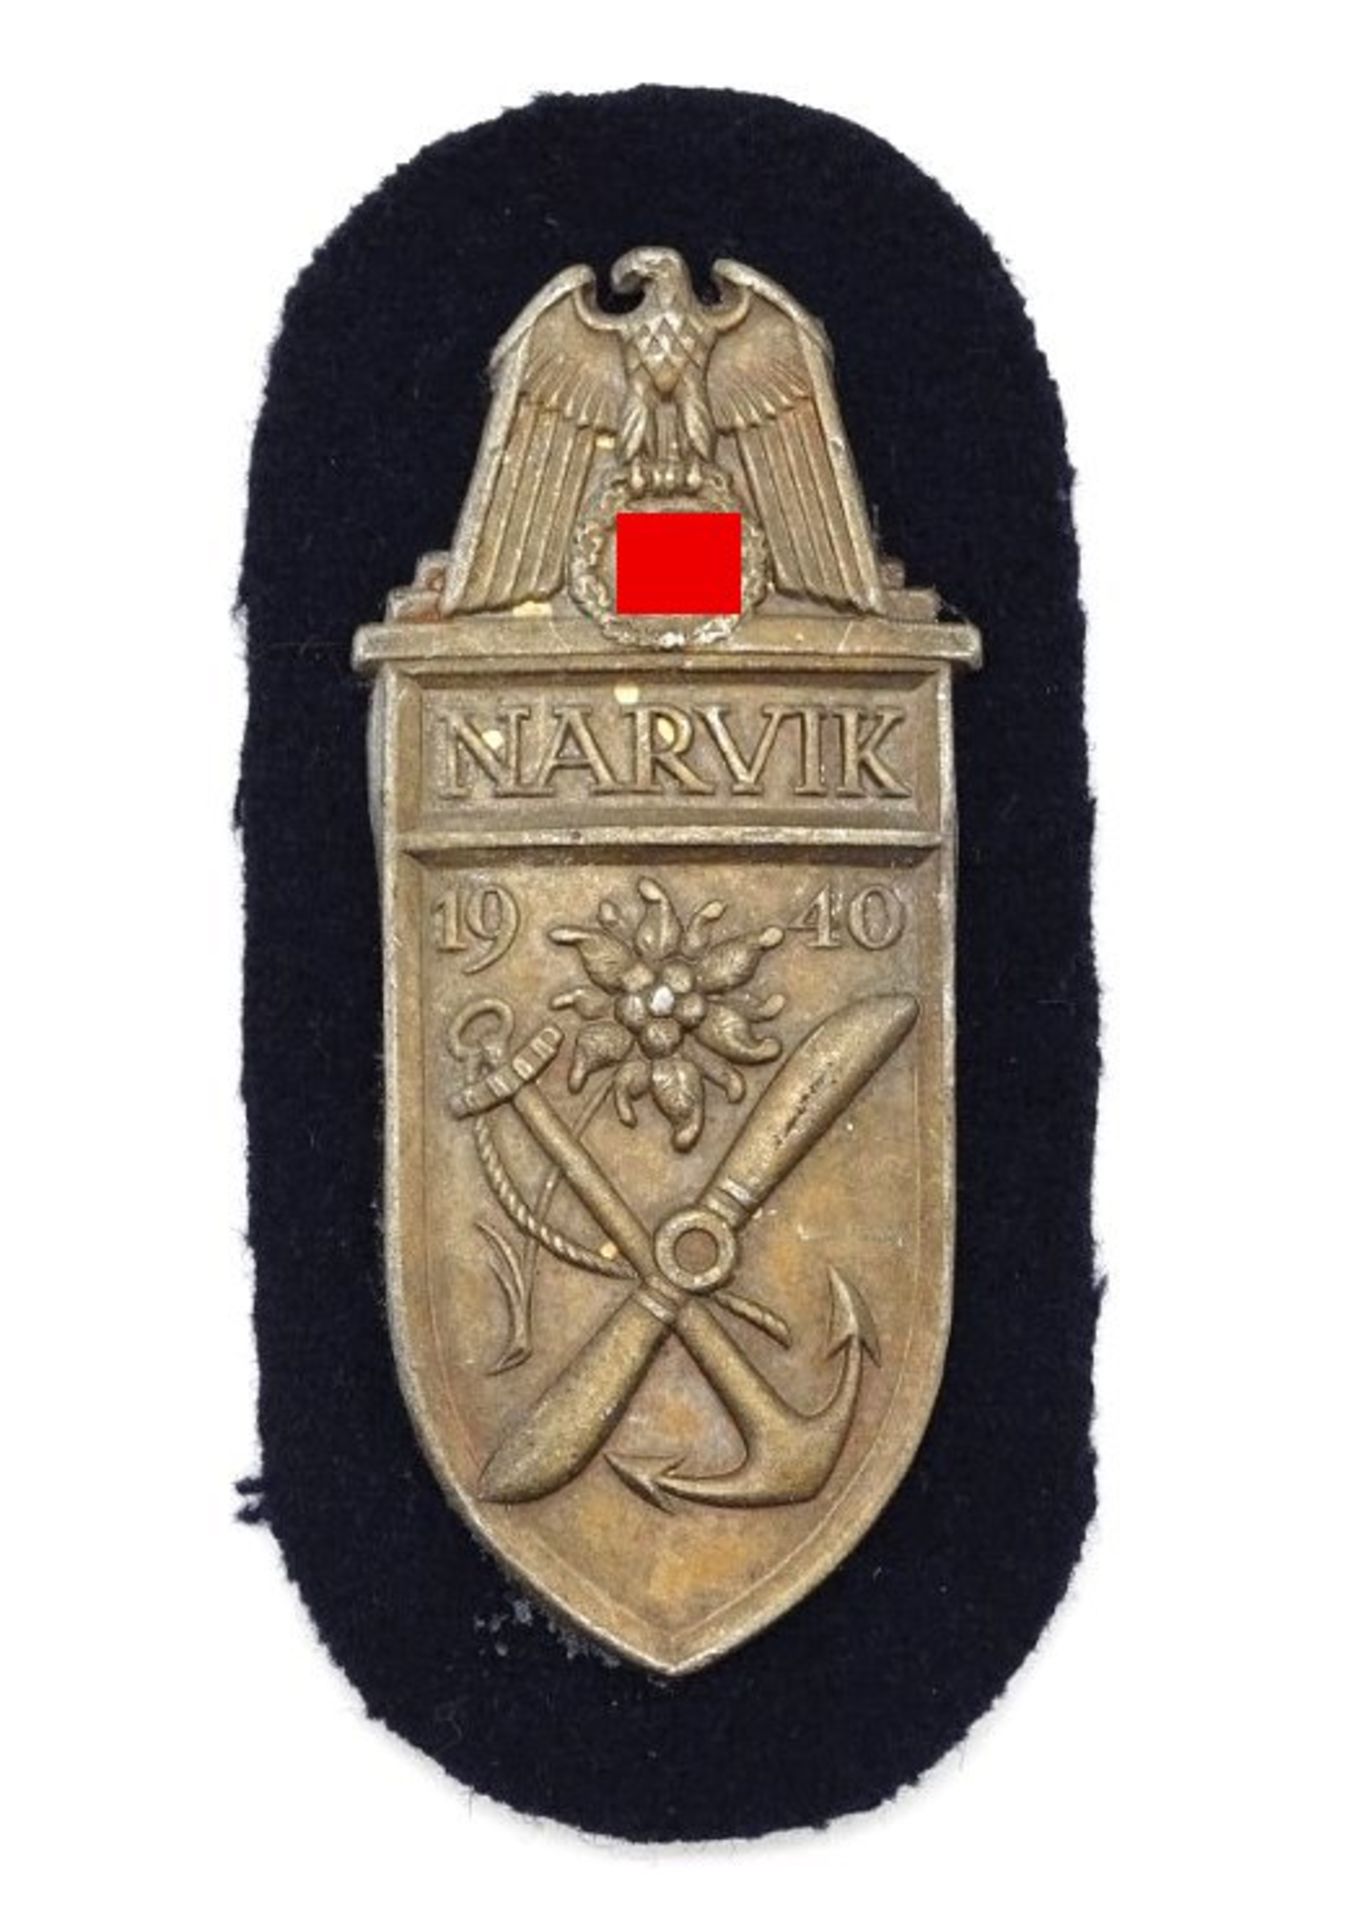 Sammlernachlass! Ärmelschild Narvik Kriegsmarine 1940 (ungeprüft)